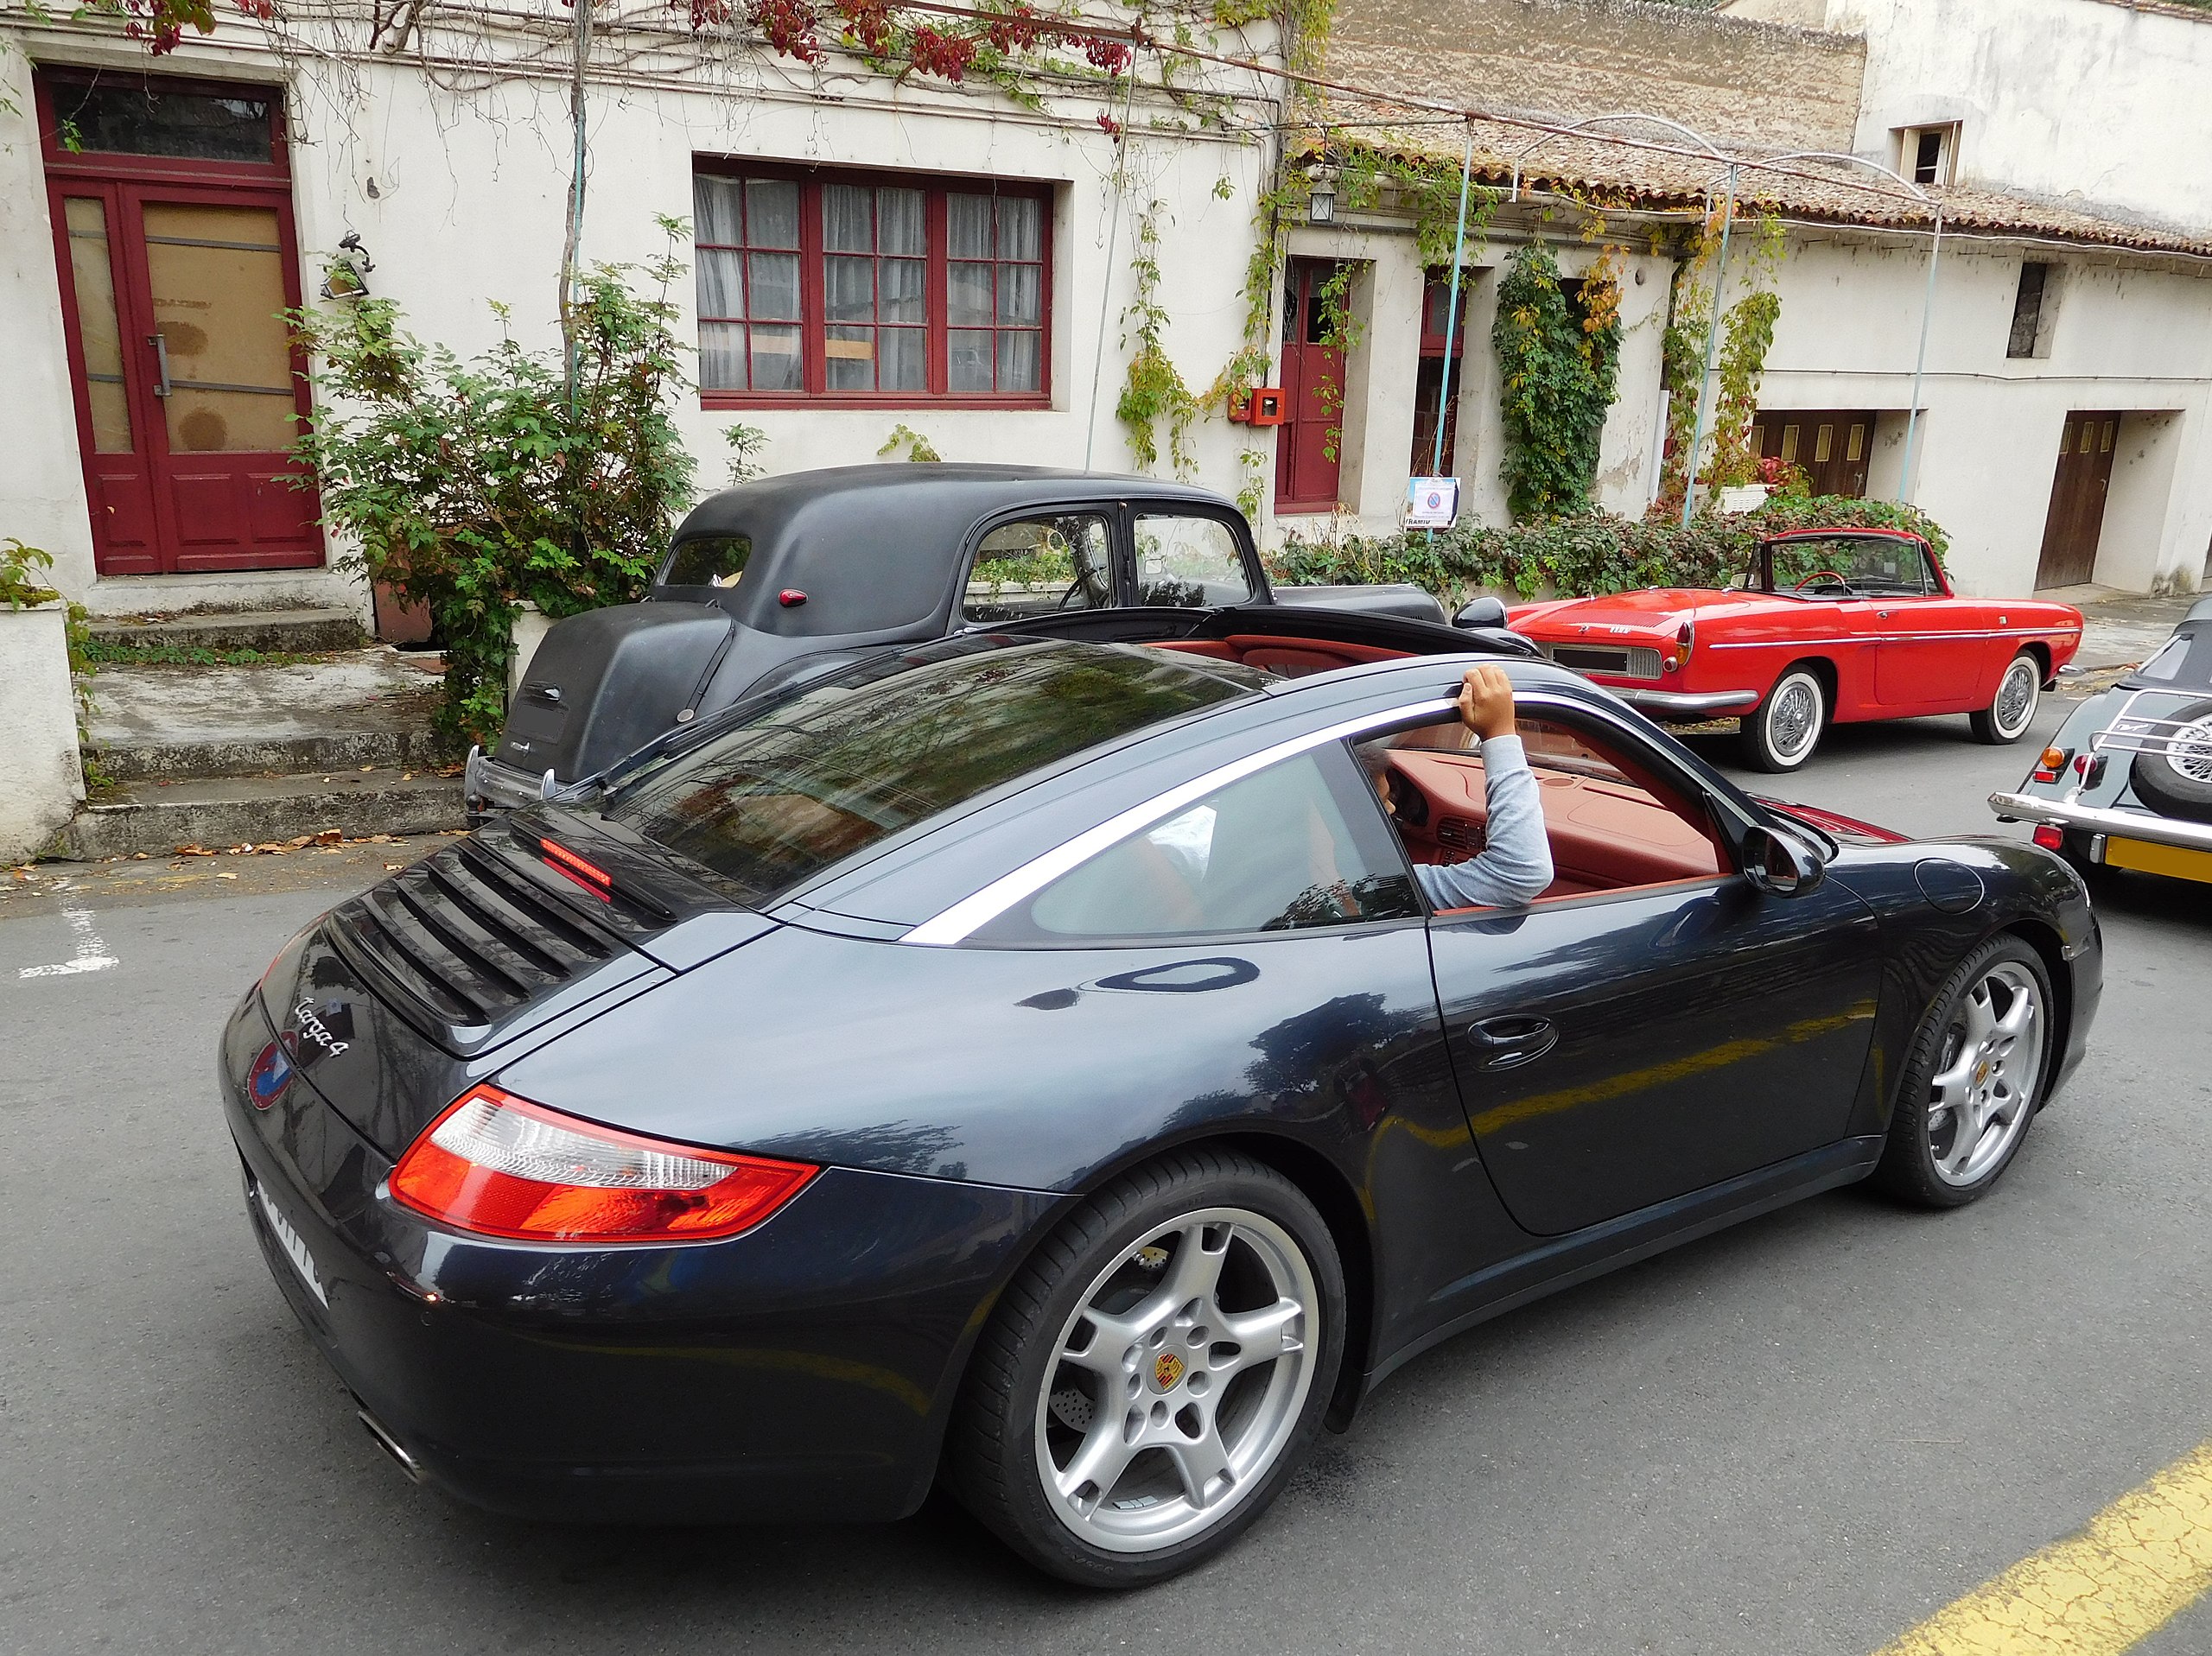 Archivo:Porsche 997 Targa 4, right view.jpg - Wikipedia, la enciclopedia  libre